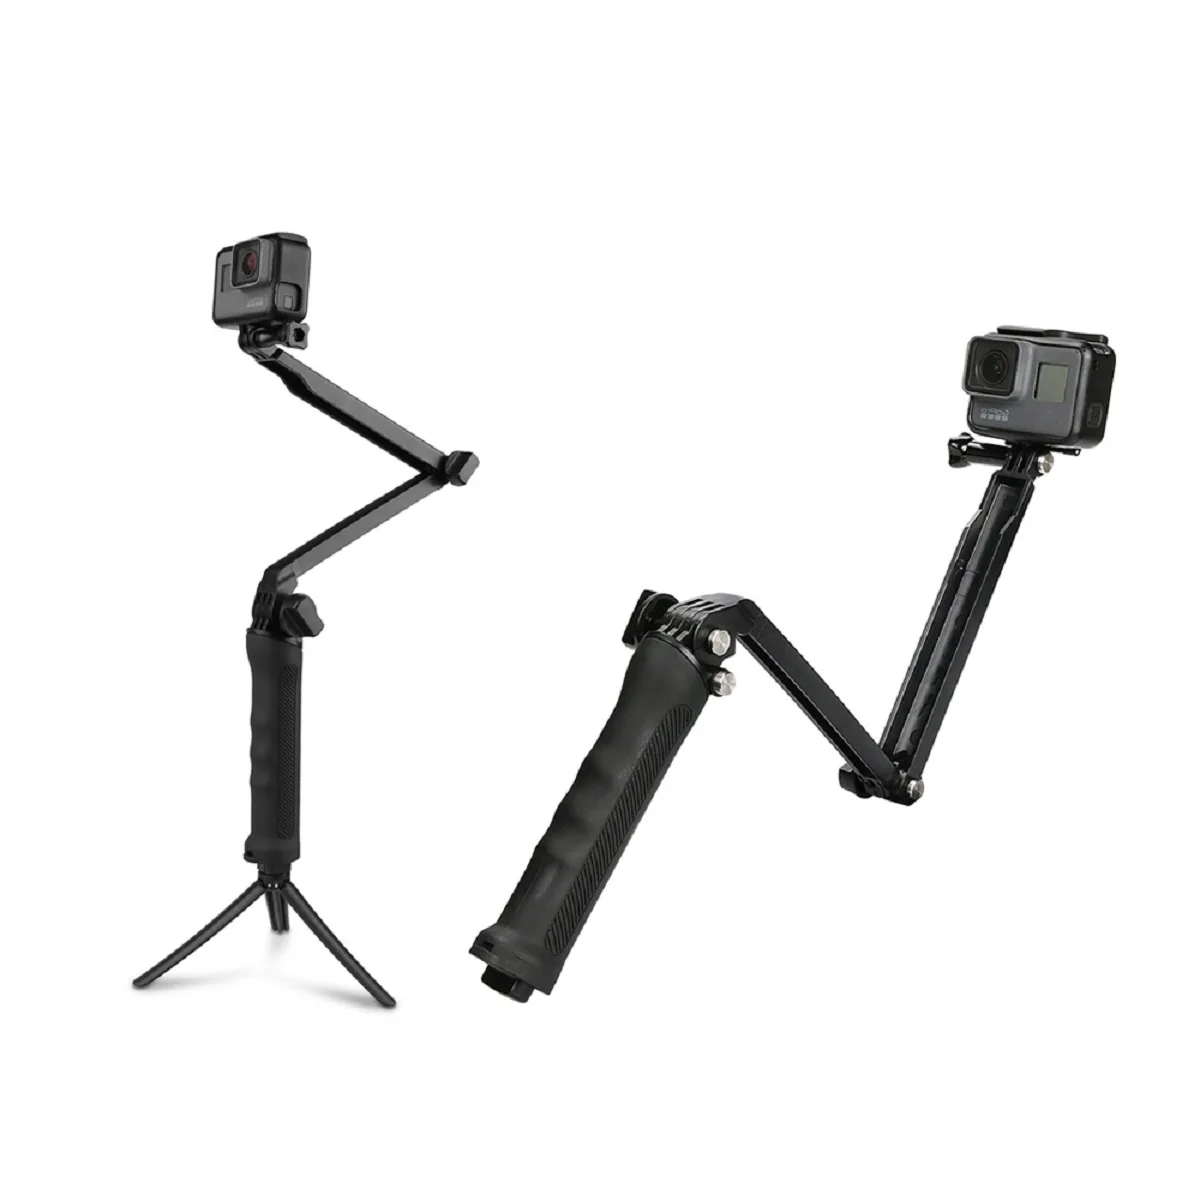 

3 Way Grip Waterproof Monopod Selfie Stick Tripod Stand for GoPro Hero 11 10 9 8 7 Yi 4K SJCAM EKEN DJI OSMO Go Pro Accessories